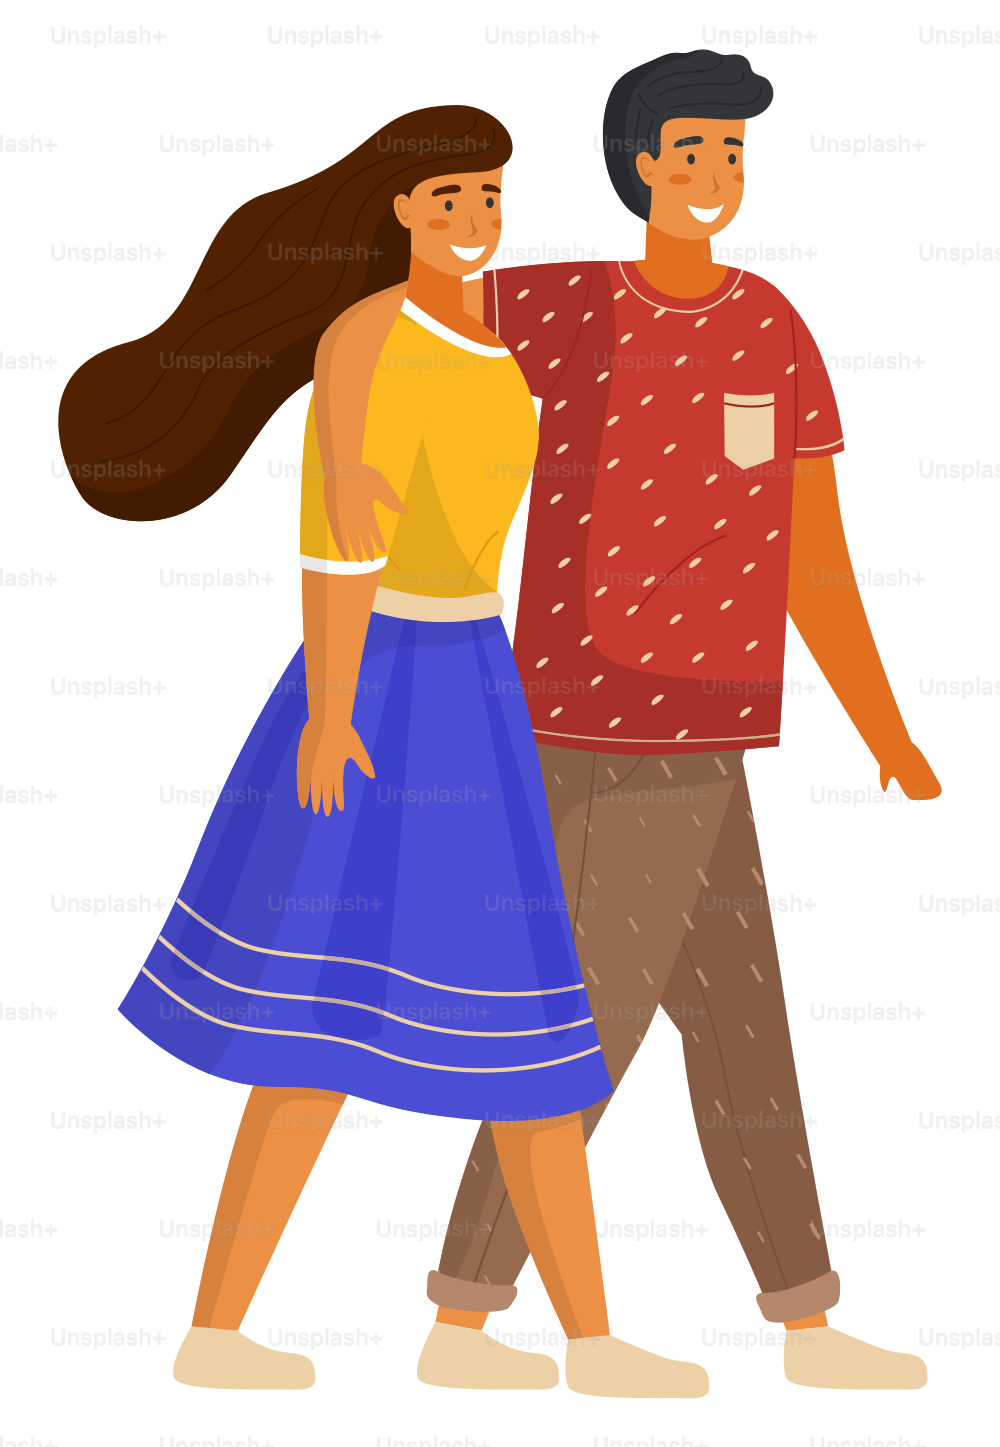 歩く若い女の子と男のカップル、スカートとシャツを着た美しい女性、Tシャツとズボンの男、カジュアルな服を着た人々、スタイリッシュな平らな漫画のキャラクター、ポートレートまたはアバター